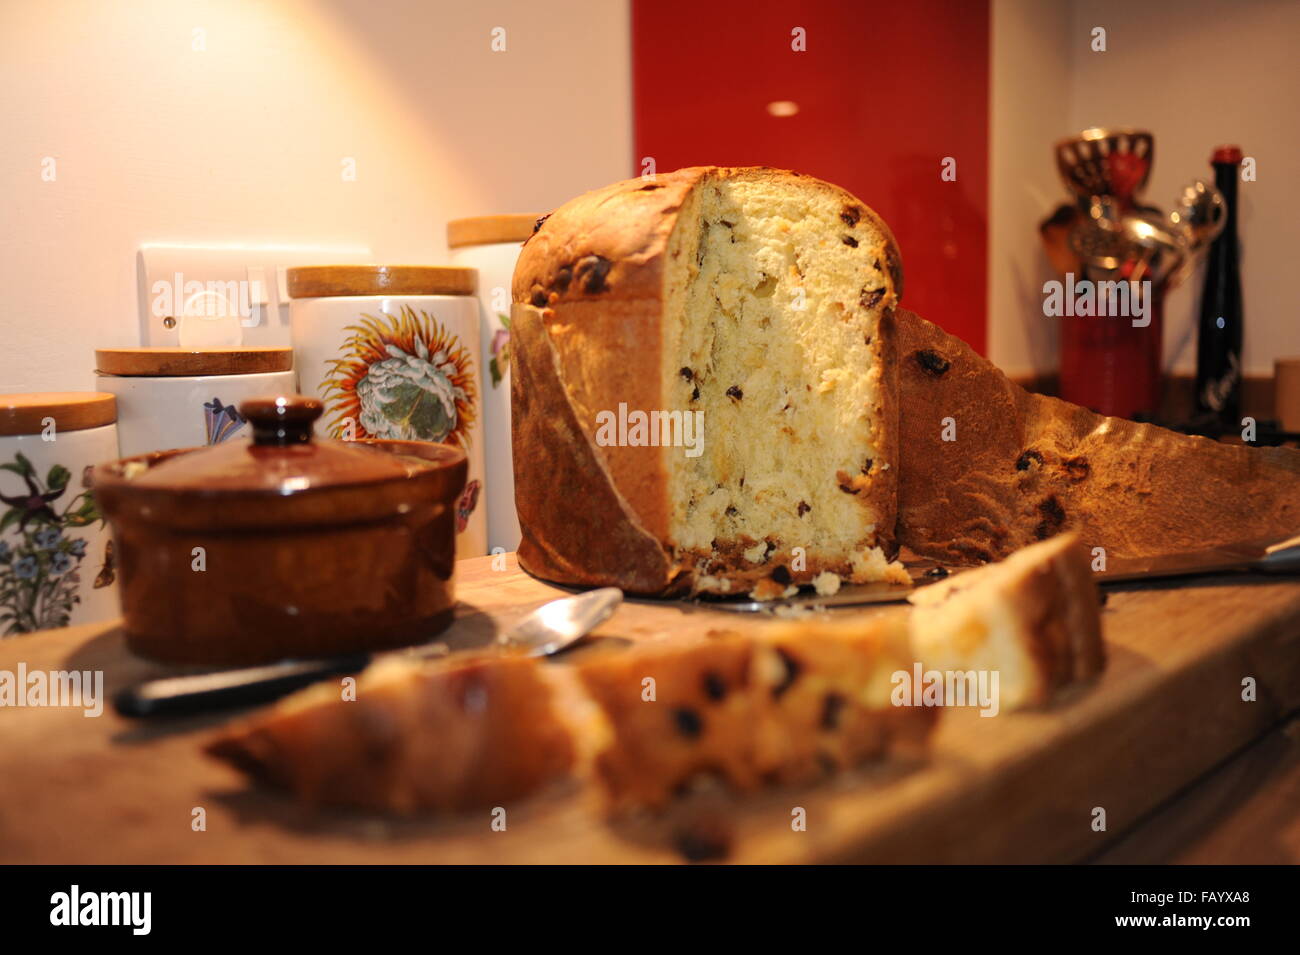 Panettone ist eine Art süßes Brot Brot ursprünglich aus Mailand Italien traditionell an Weihnachten gegessen Stockfoto